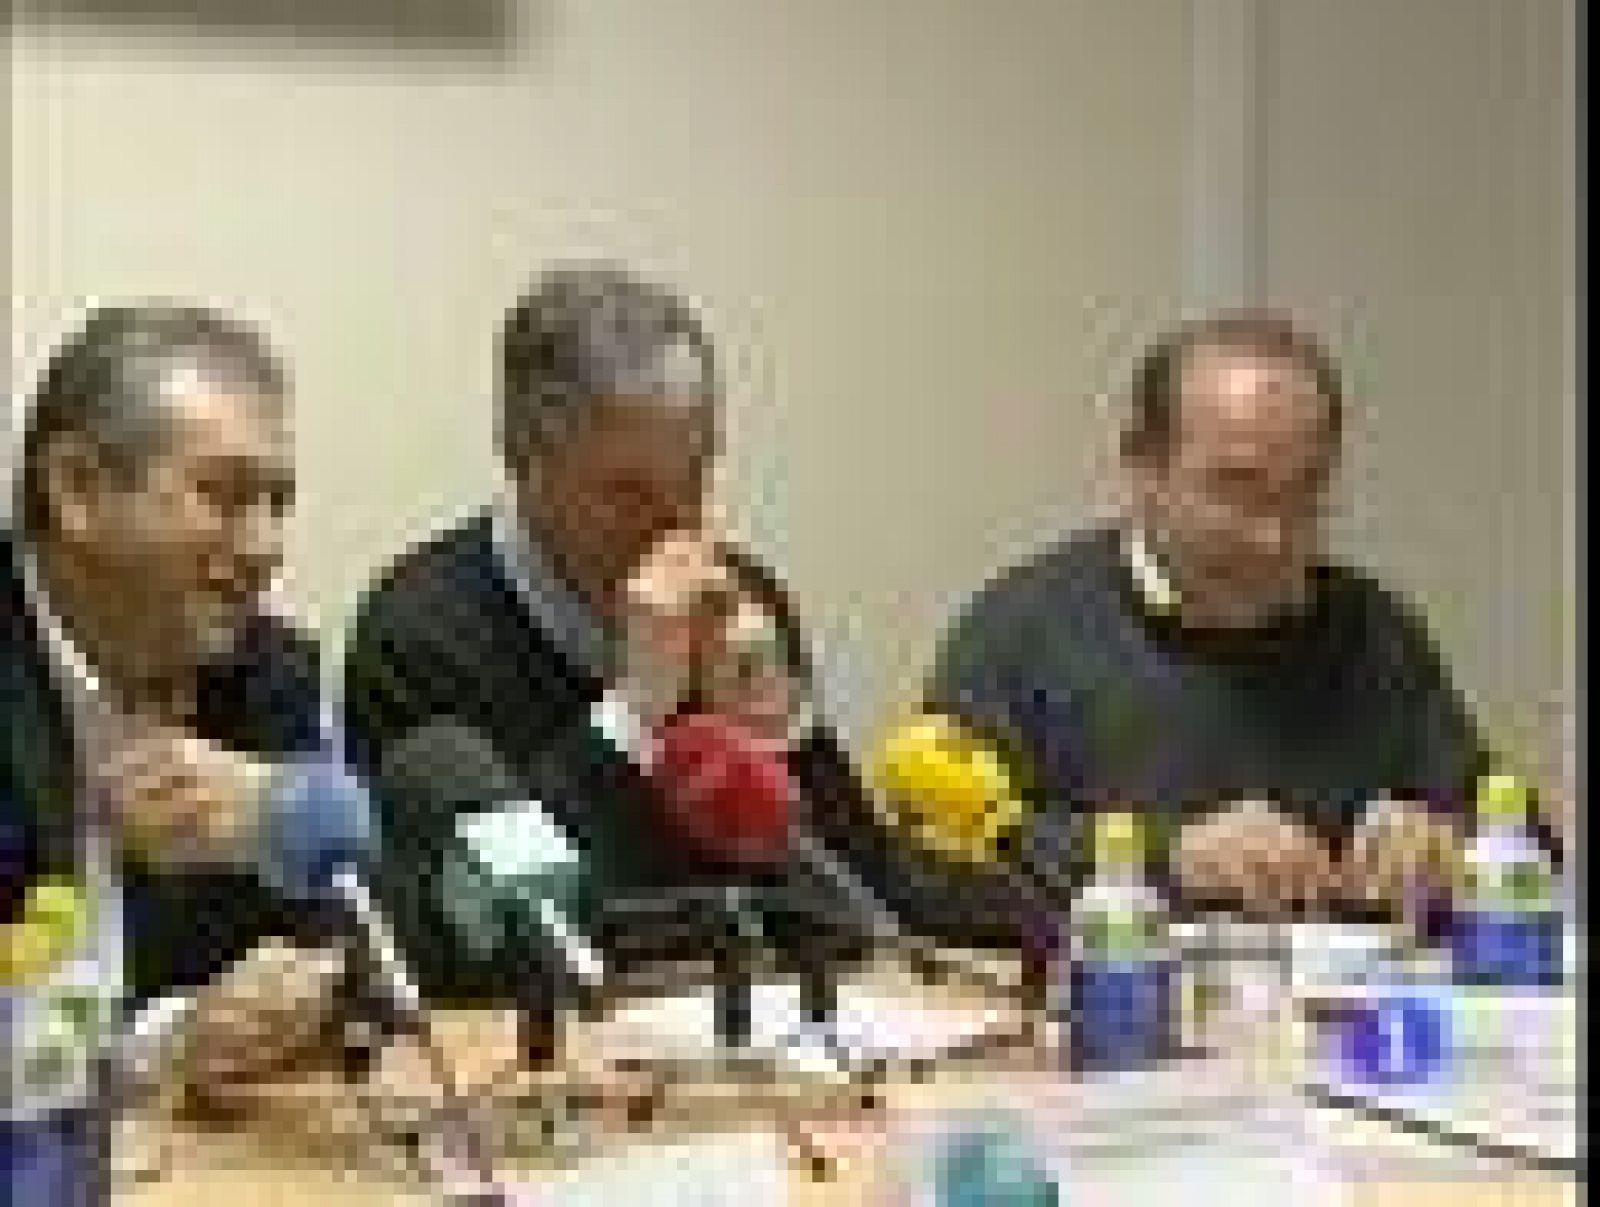  Representantes de los principales sindicatos españoles presionan al Ministerio de Educación para que "obligue" a las comunidades autónomas a convocar oposiciones al cuerpo de maestros en 2011